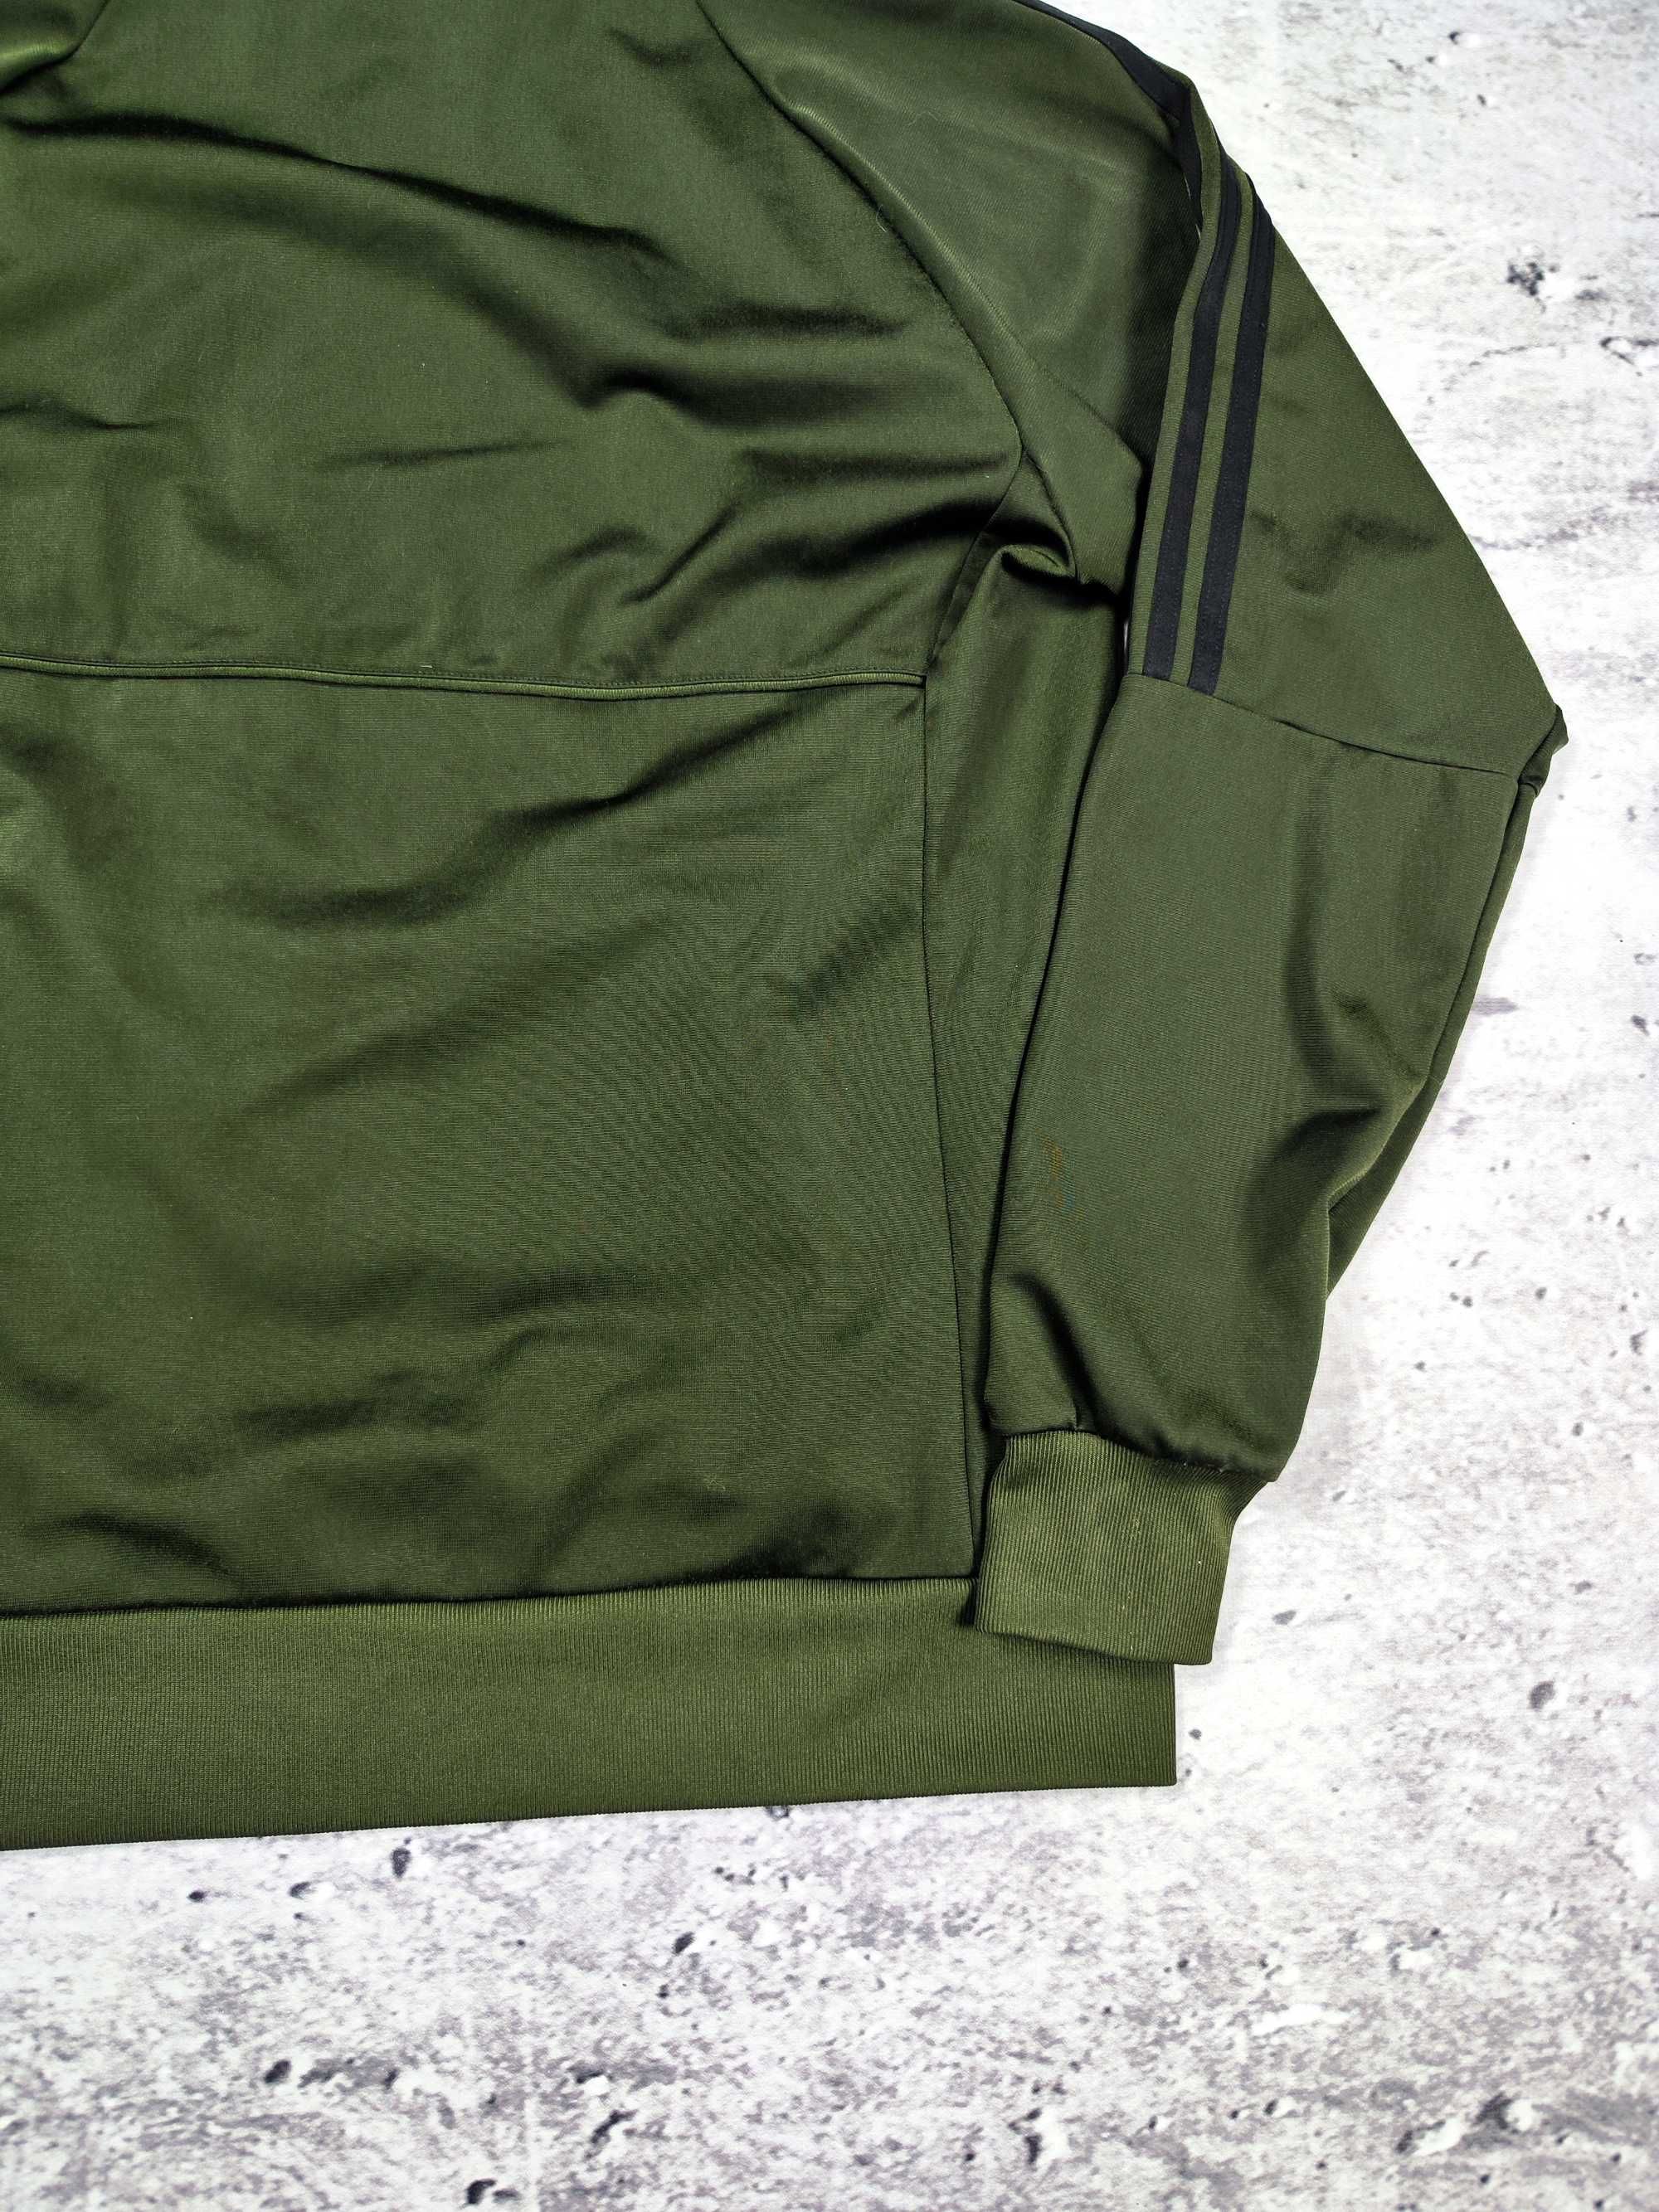 Bluza Adidas sportowa męska khaki zielona z kapturem r. S